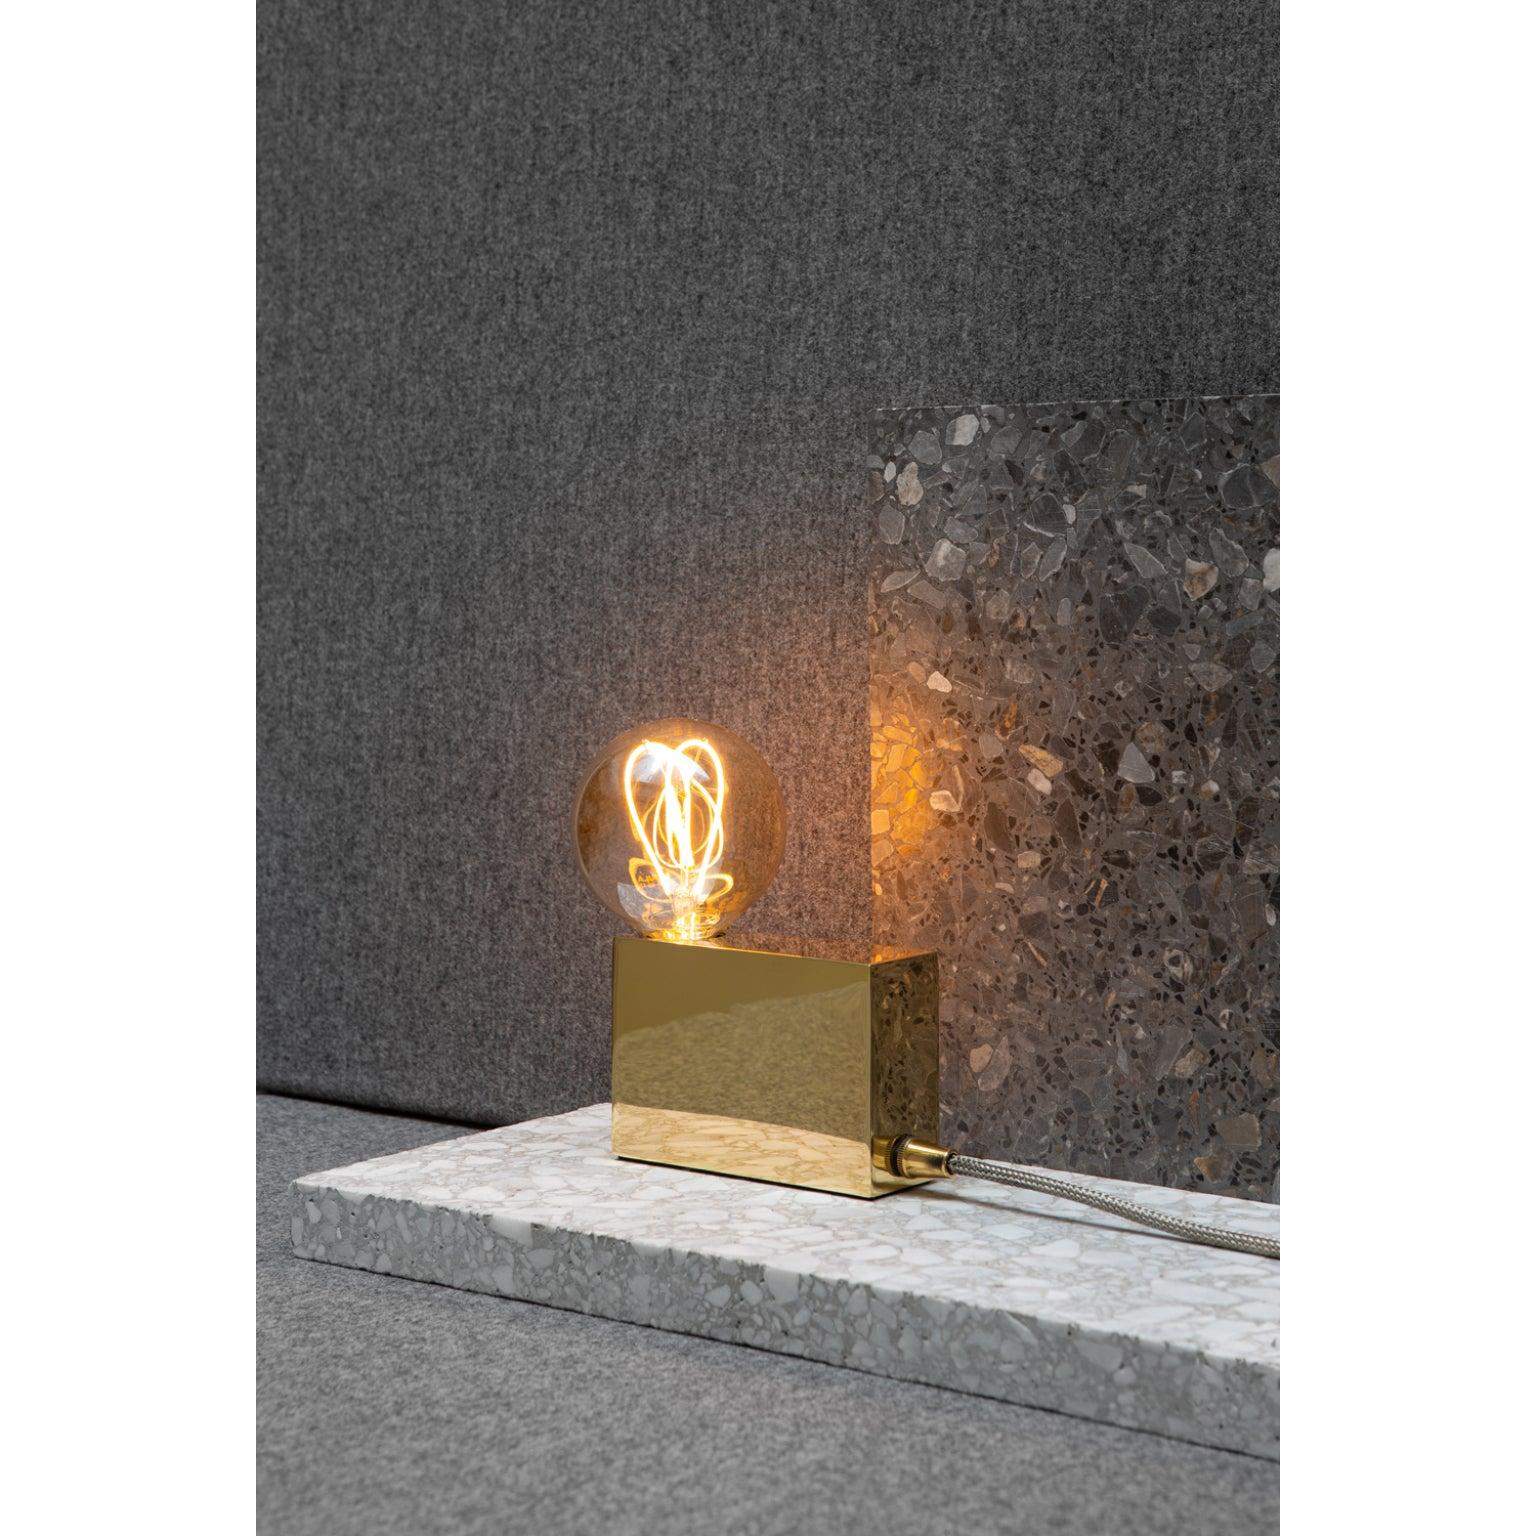 Contemporary Unique Jewelry Lights Lamp by Koen Van Guijze